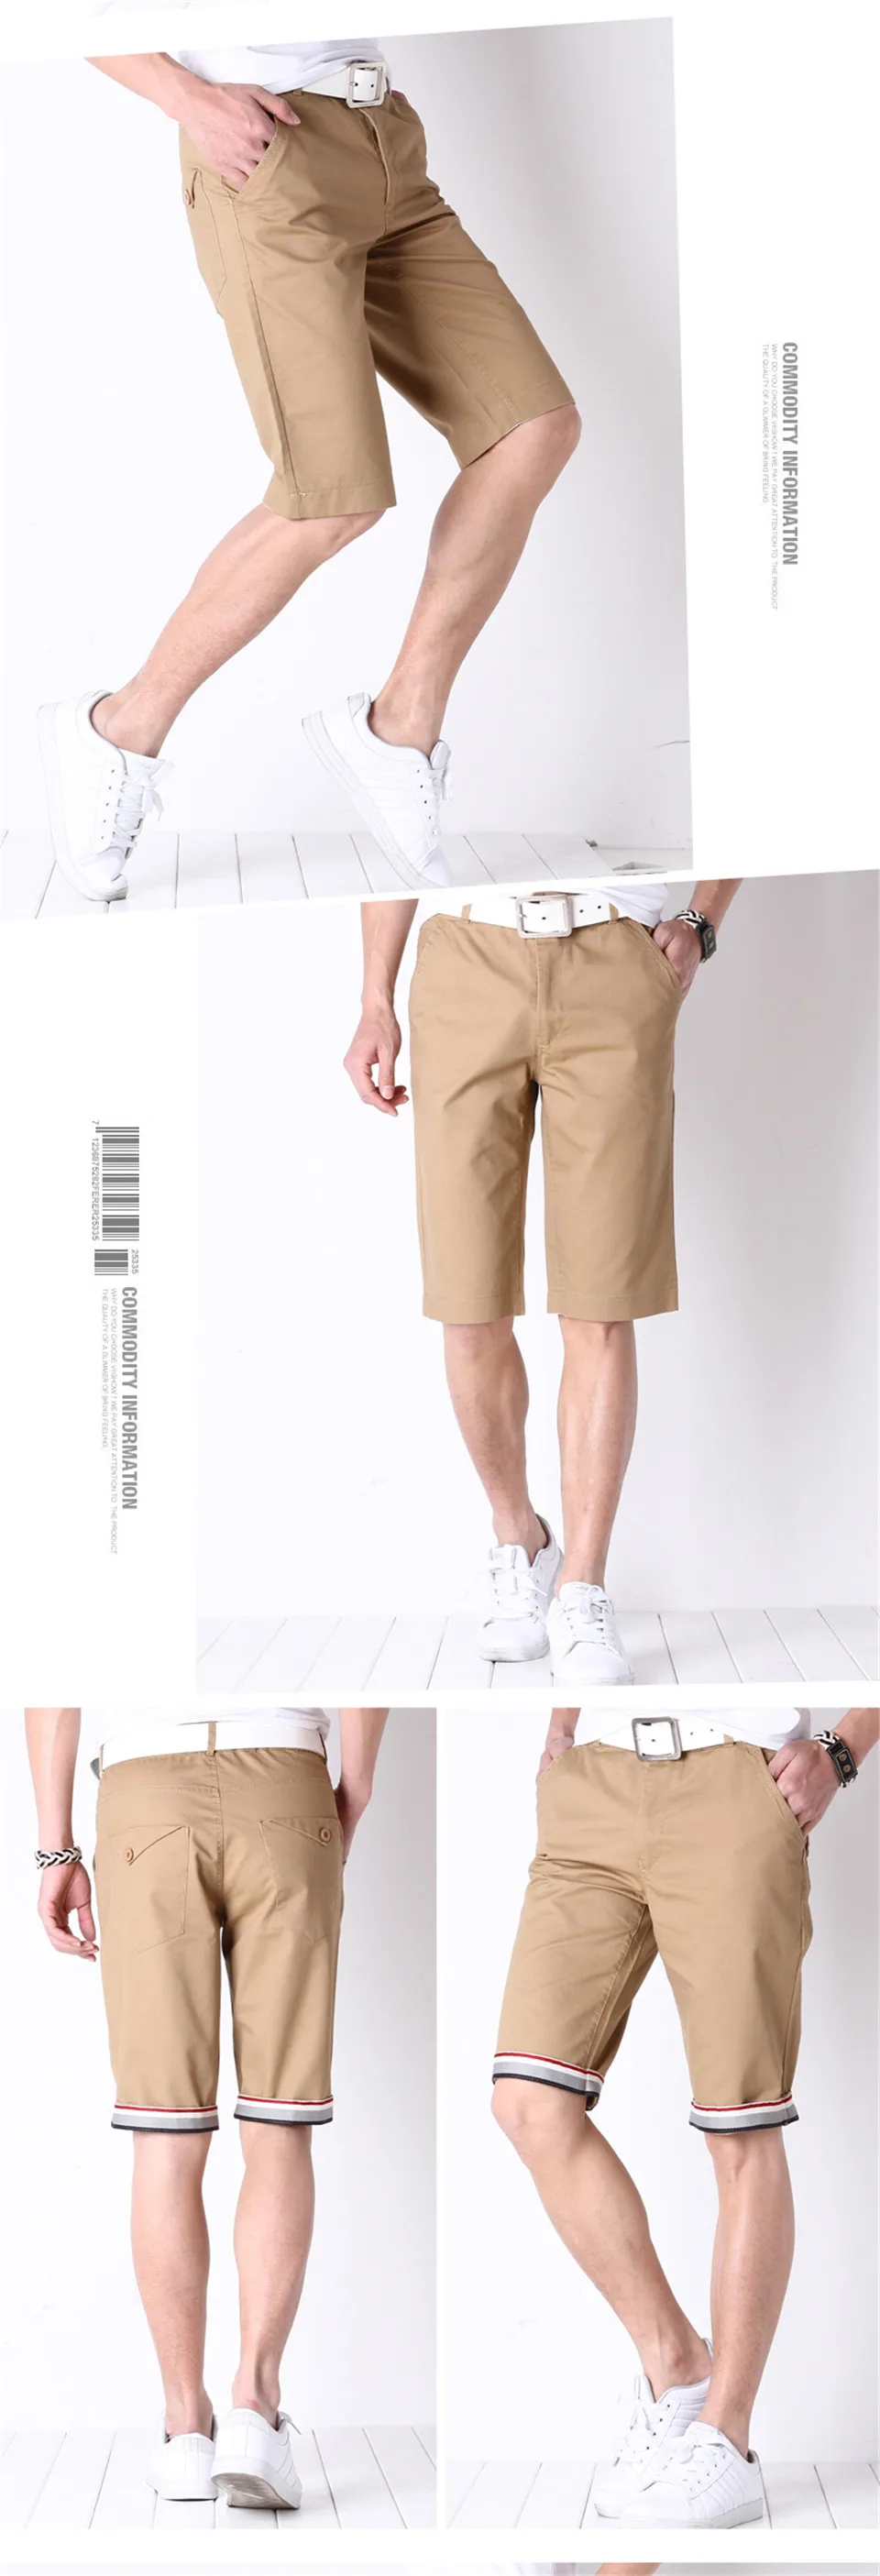 FGKKS Мужские шорты новые летние модные повседневные хлопковые тонкие бермуды Masculina пляжные шорты для бега брюки шорты мужские